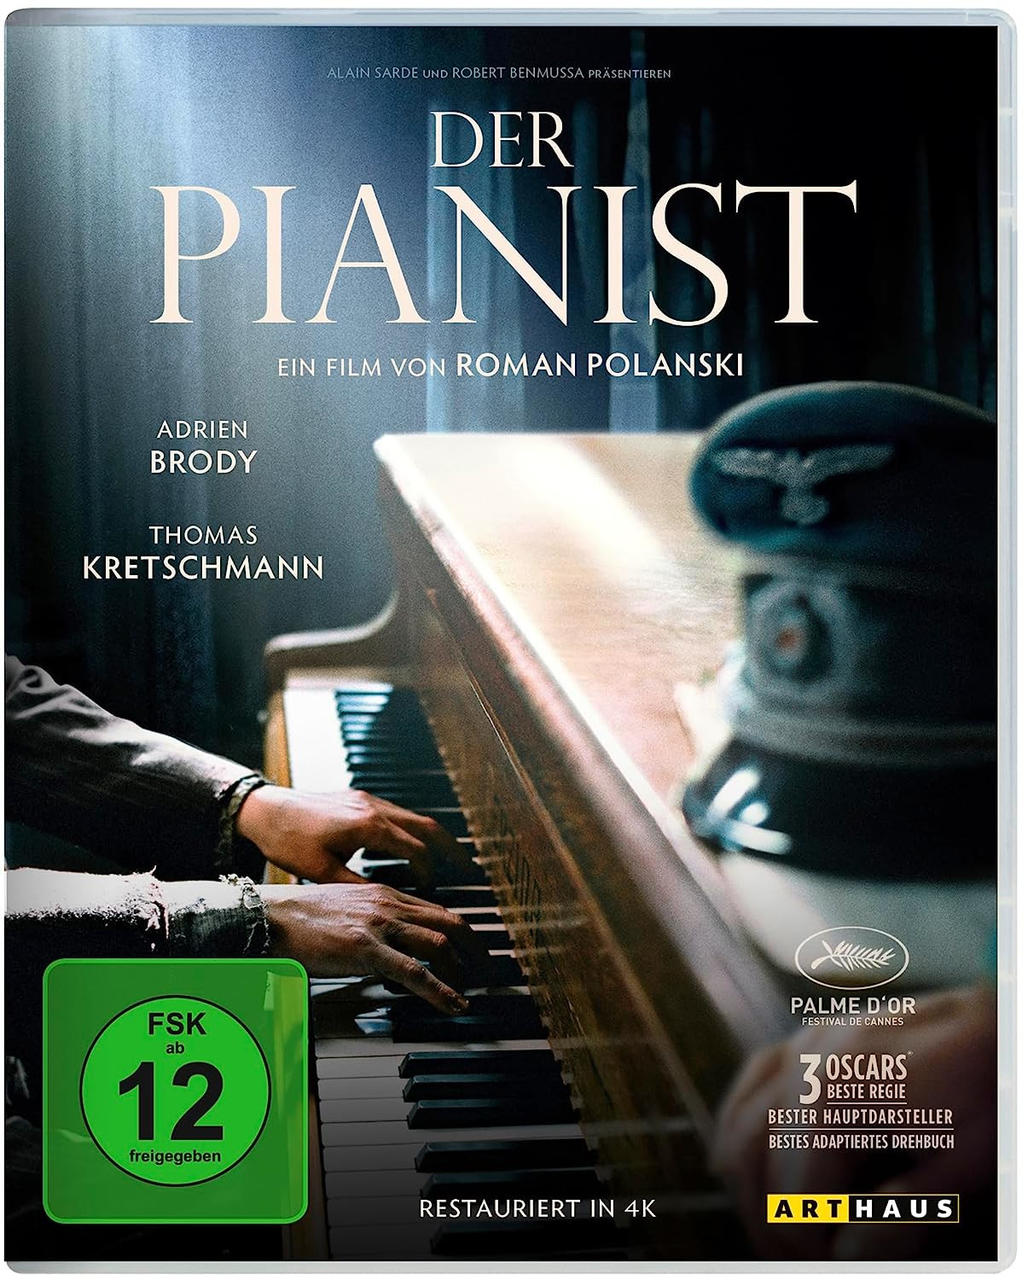 Pianist Der Blu-ray